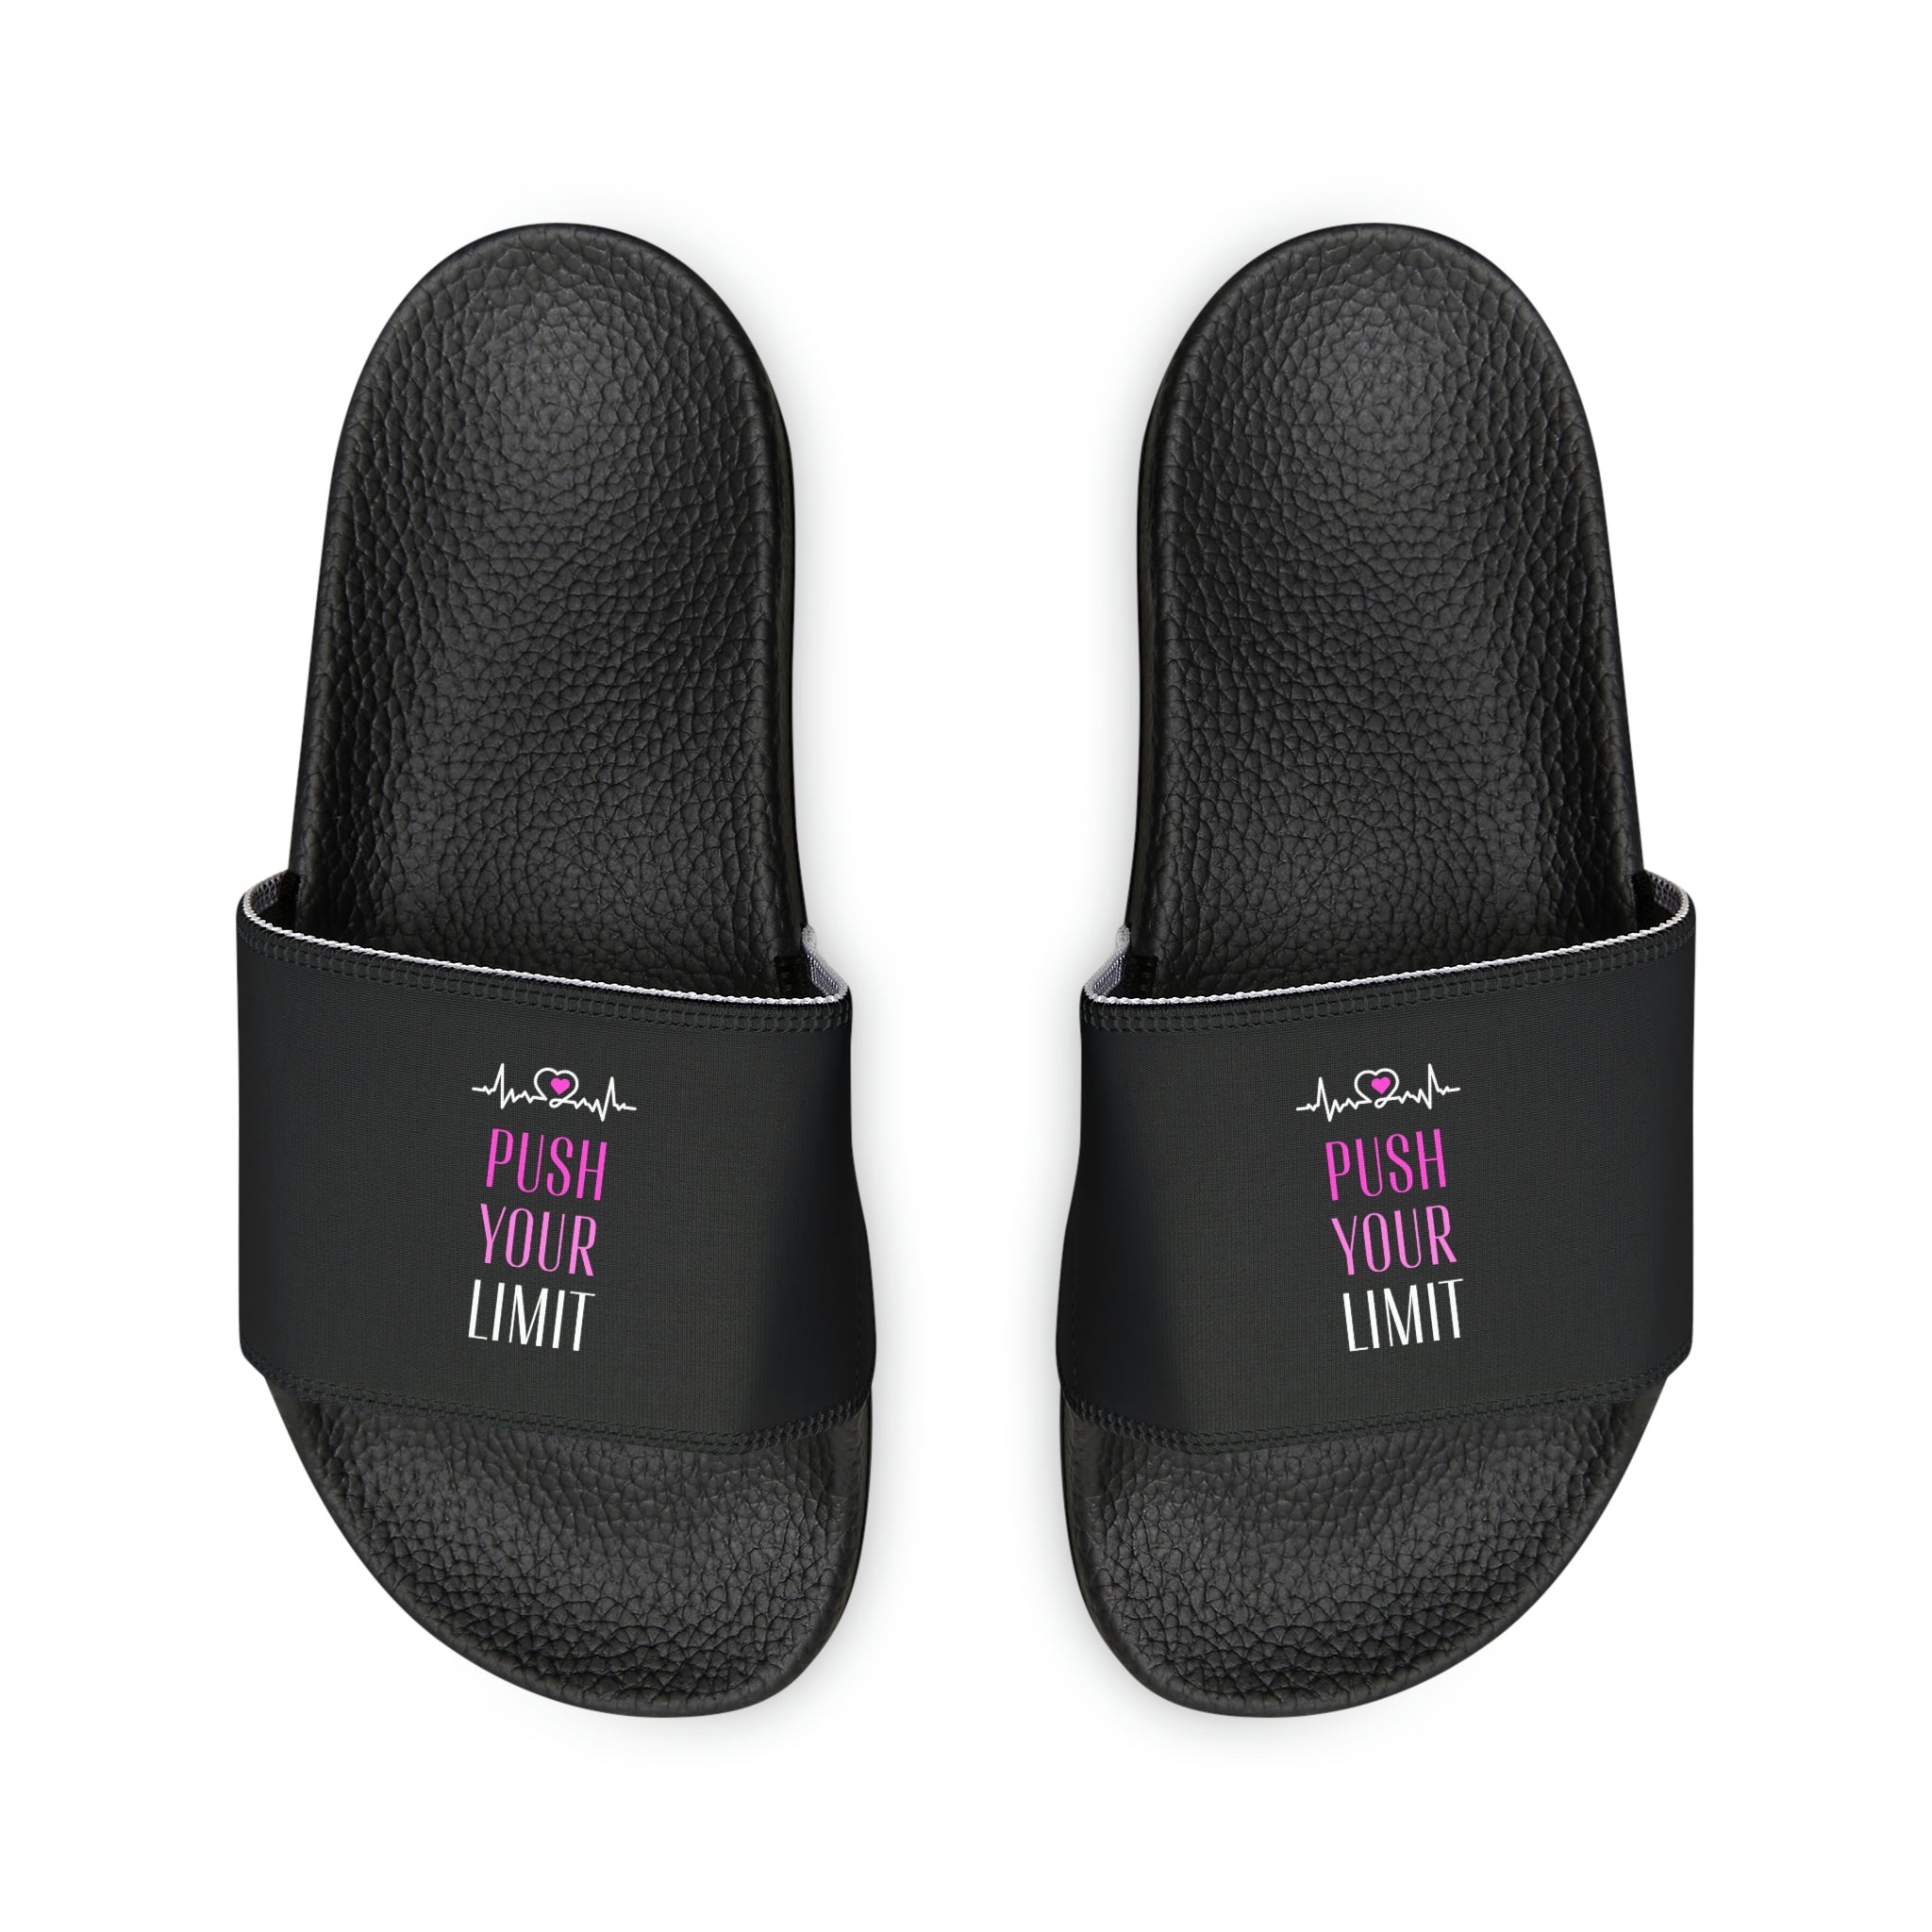 Push Your Limit Slide Sandals